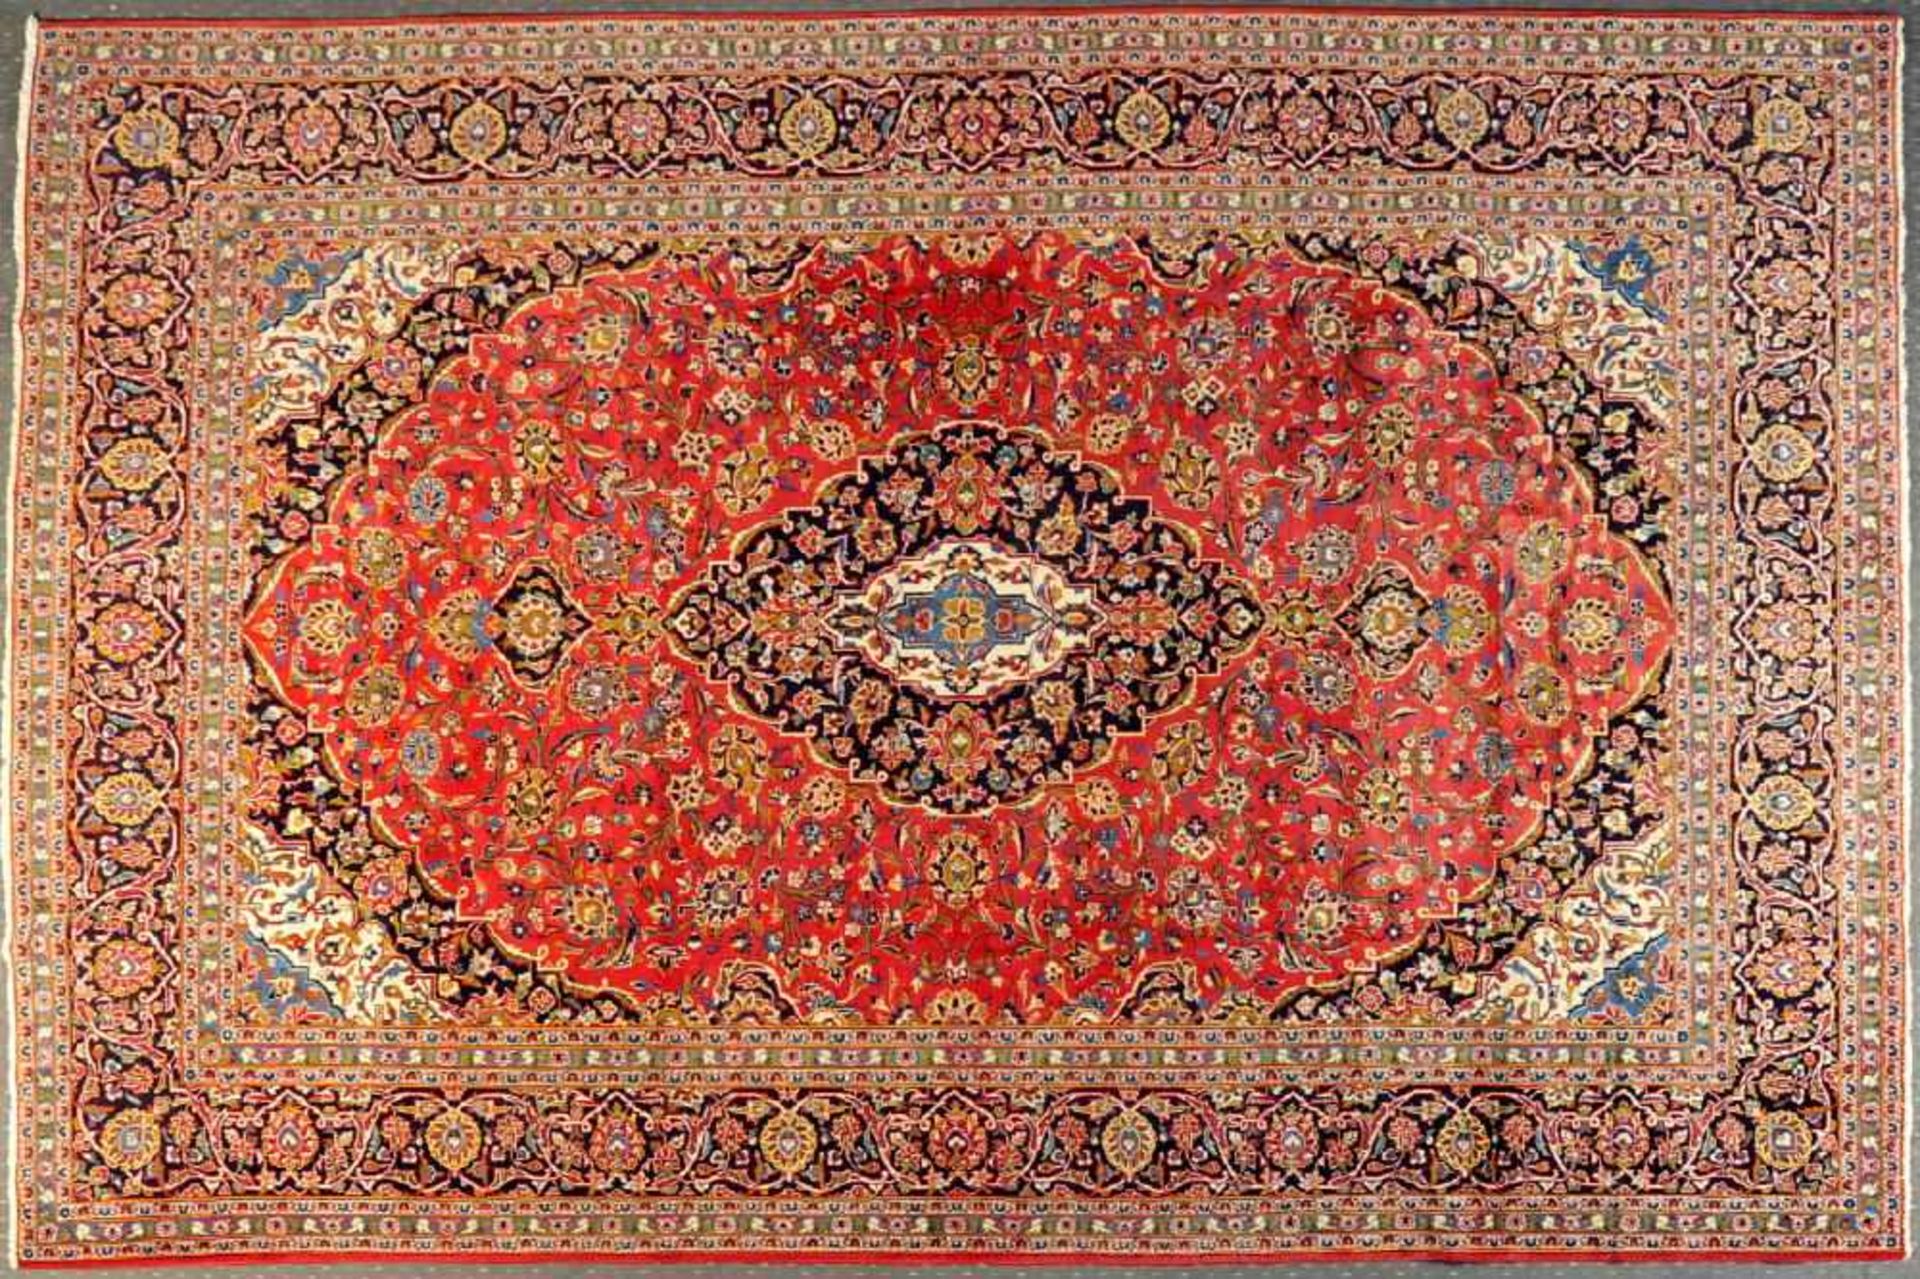 Keschan, Persien, 295 x 392 cmWolle, rotgrundig, großes, mehrfarb. Mittelstück, umgeben von floralen